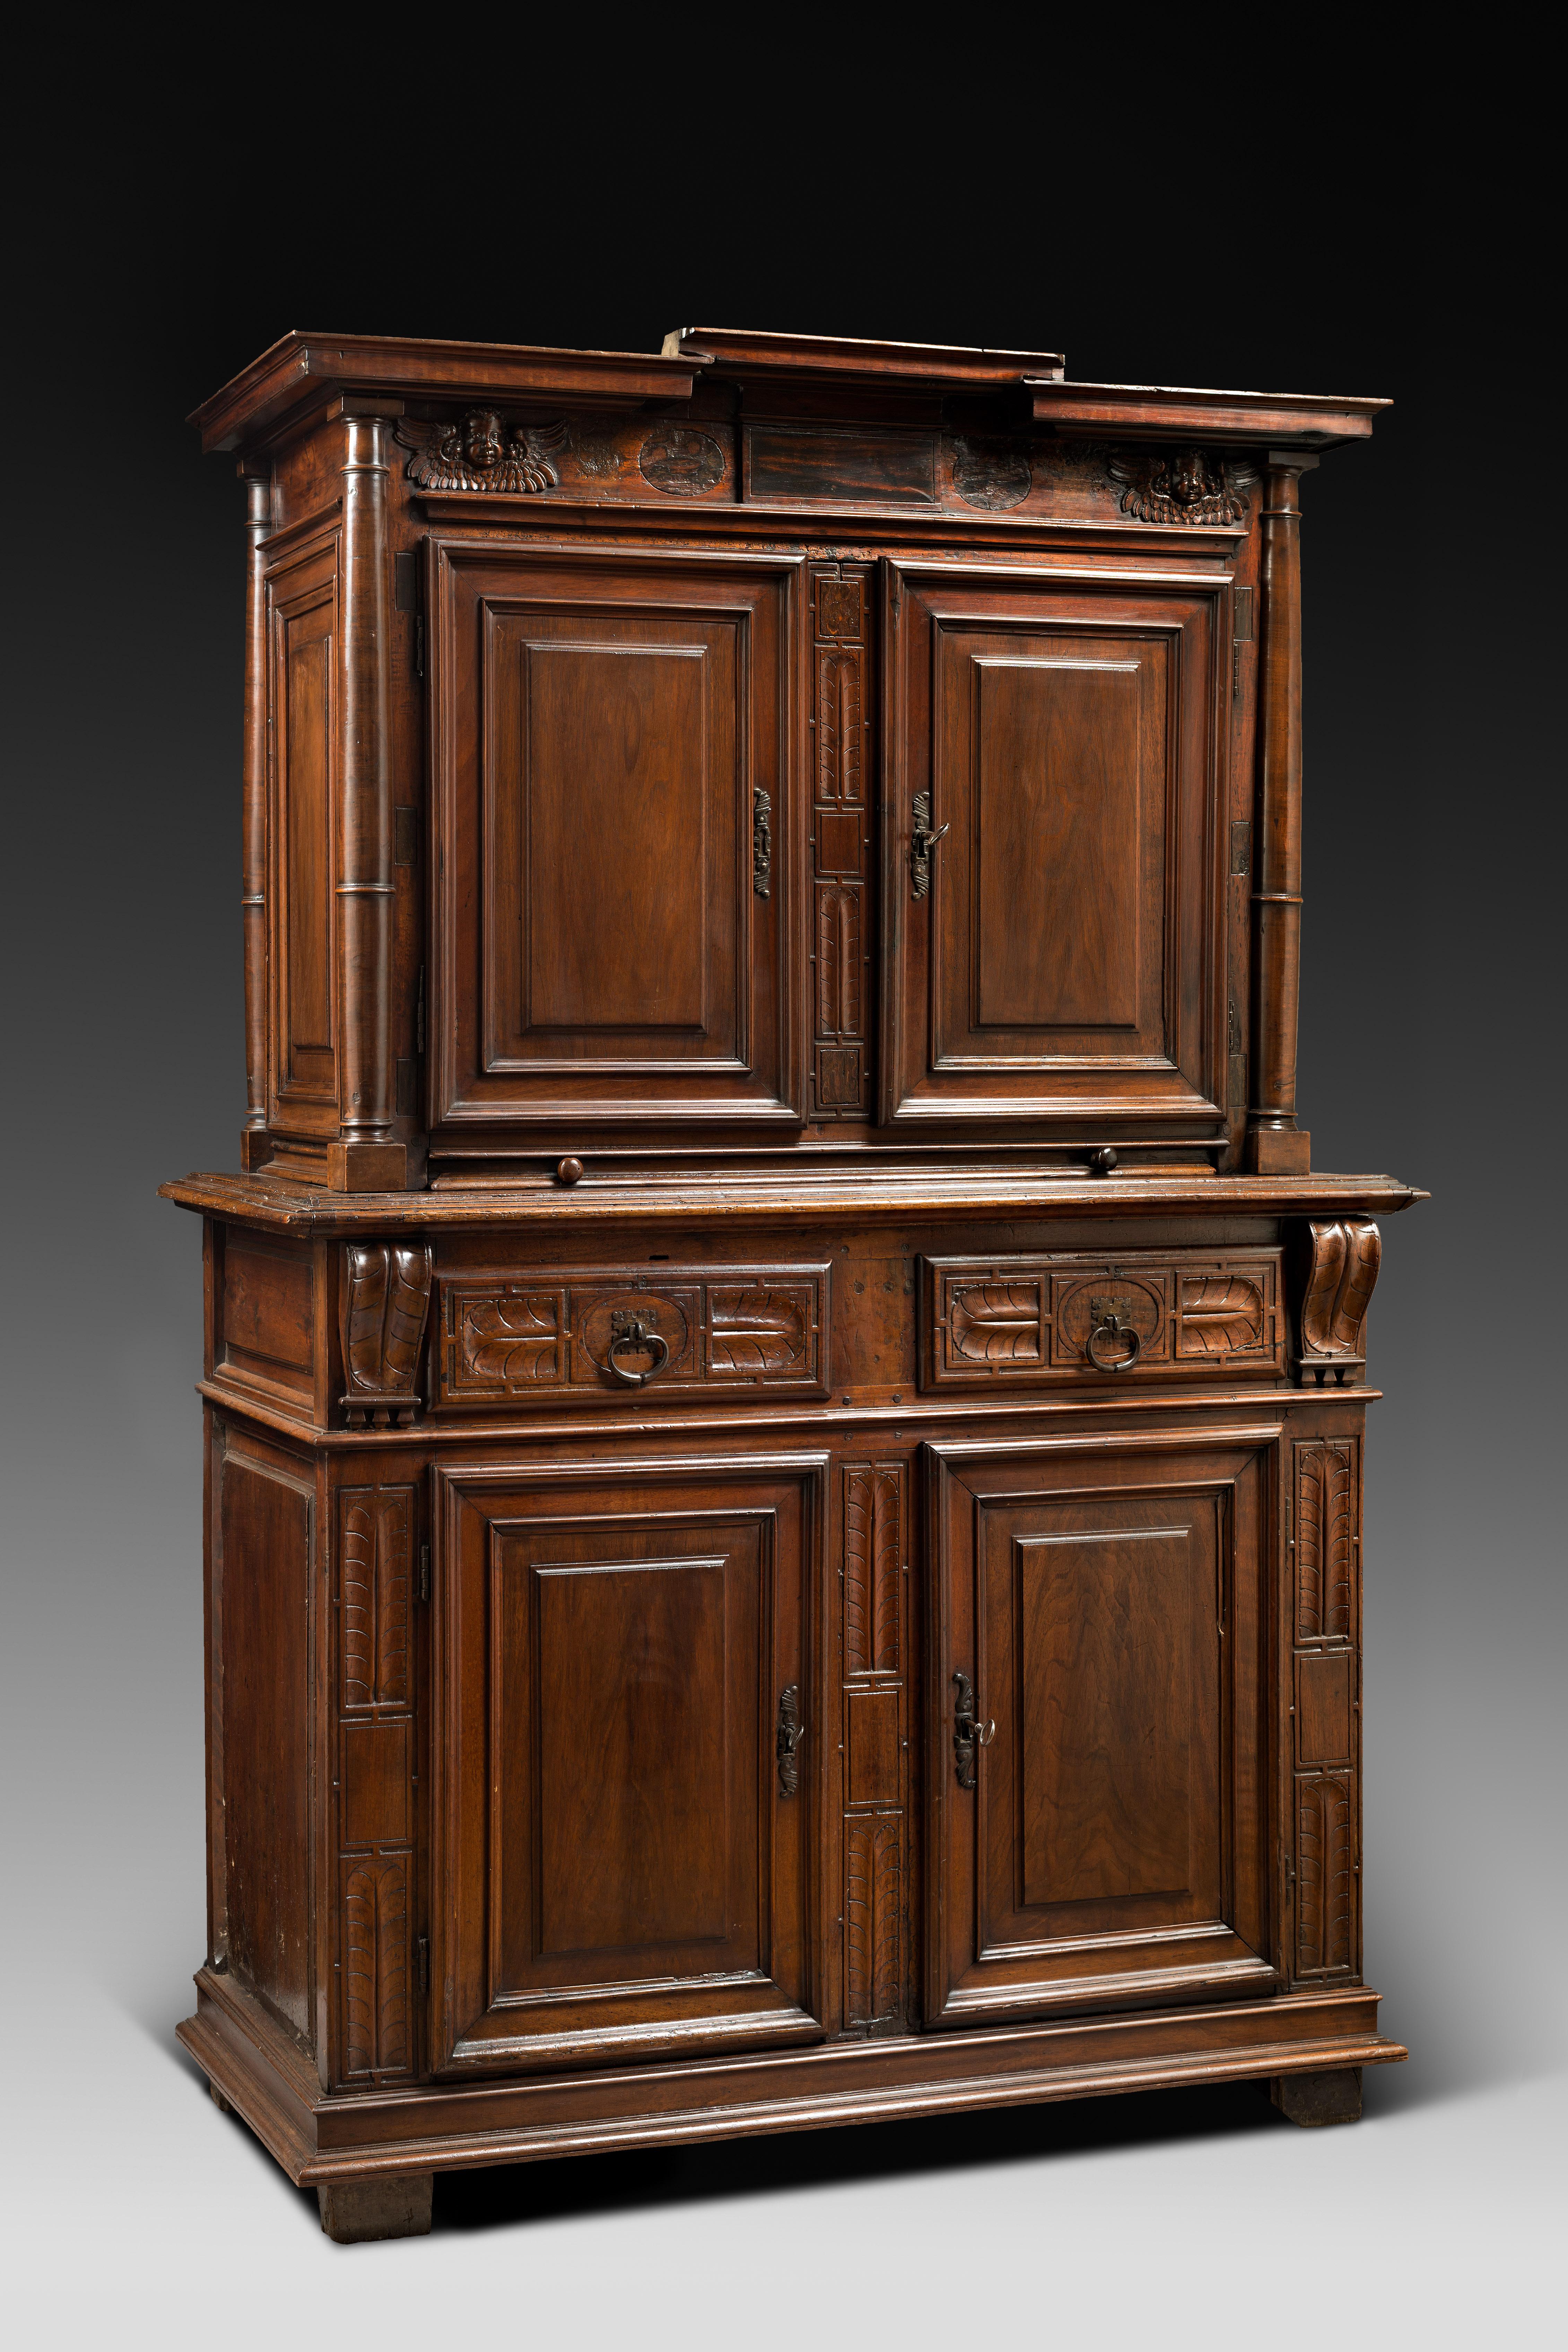 Ancienne collection Altounian

Au début du règne d'Henri II (1547-1559), l'ornementation du mobilier évolue. Les quelques motifs médiévaux qui étaient encore utilisés sont finalement abandonnés. Les meubles deviennent plus sobres, mettant en